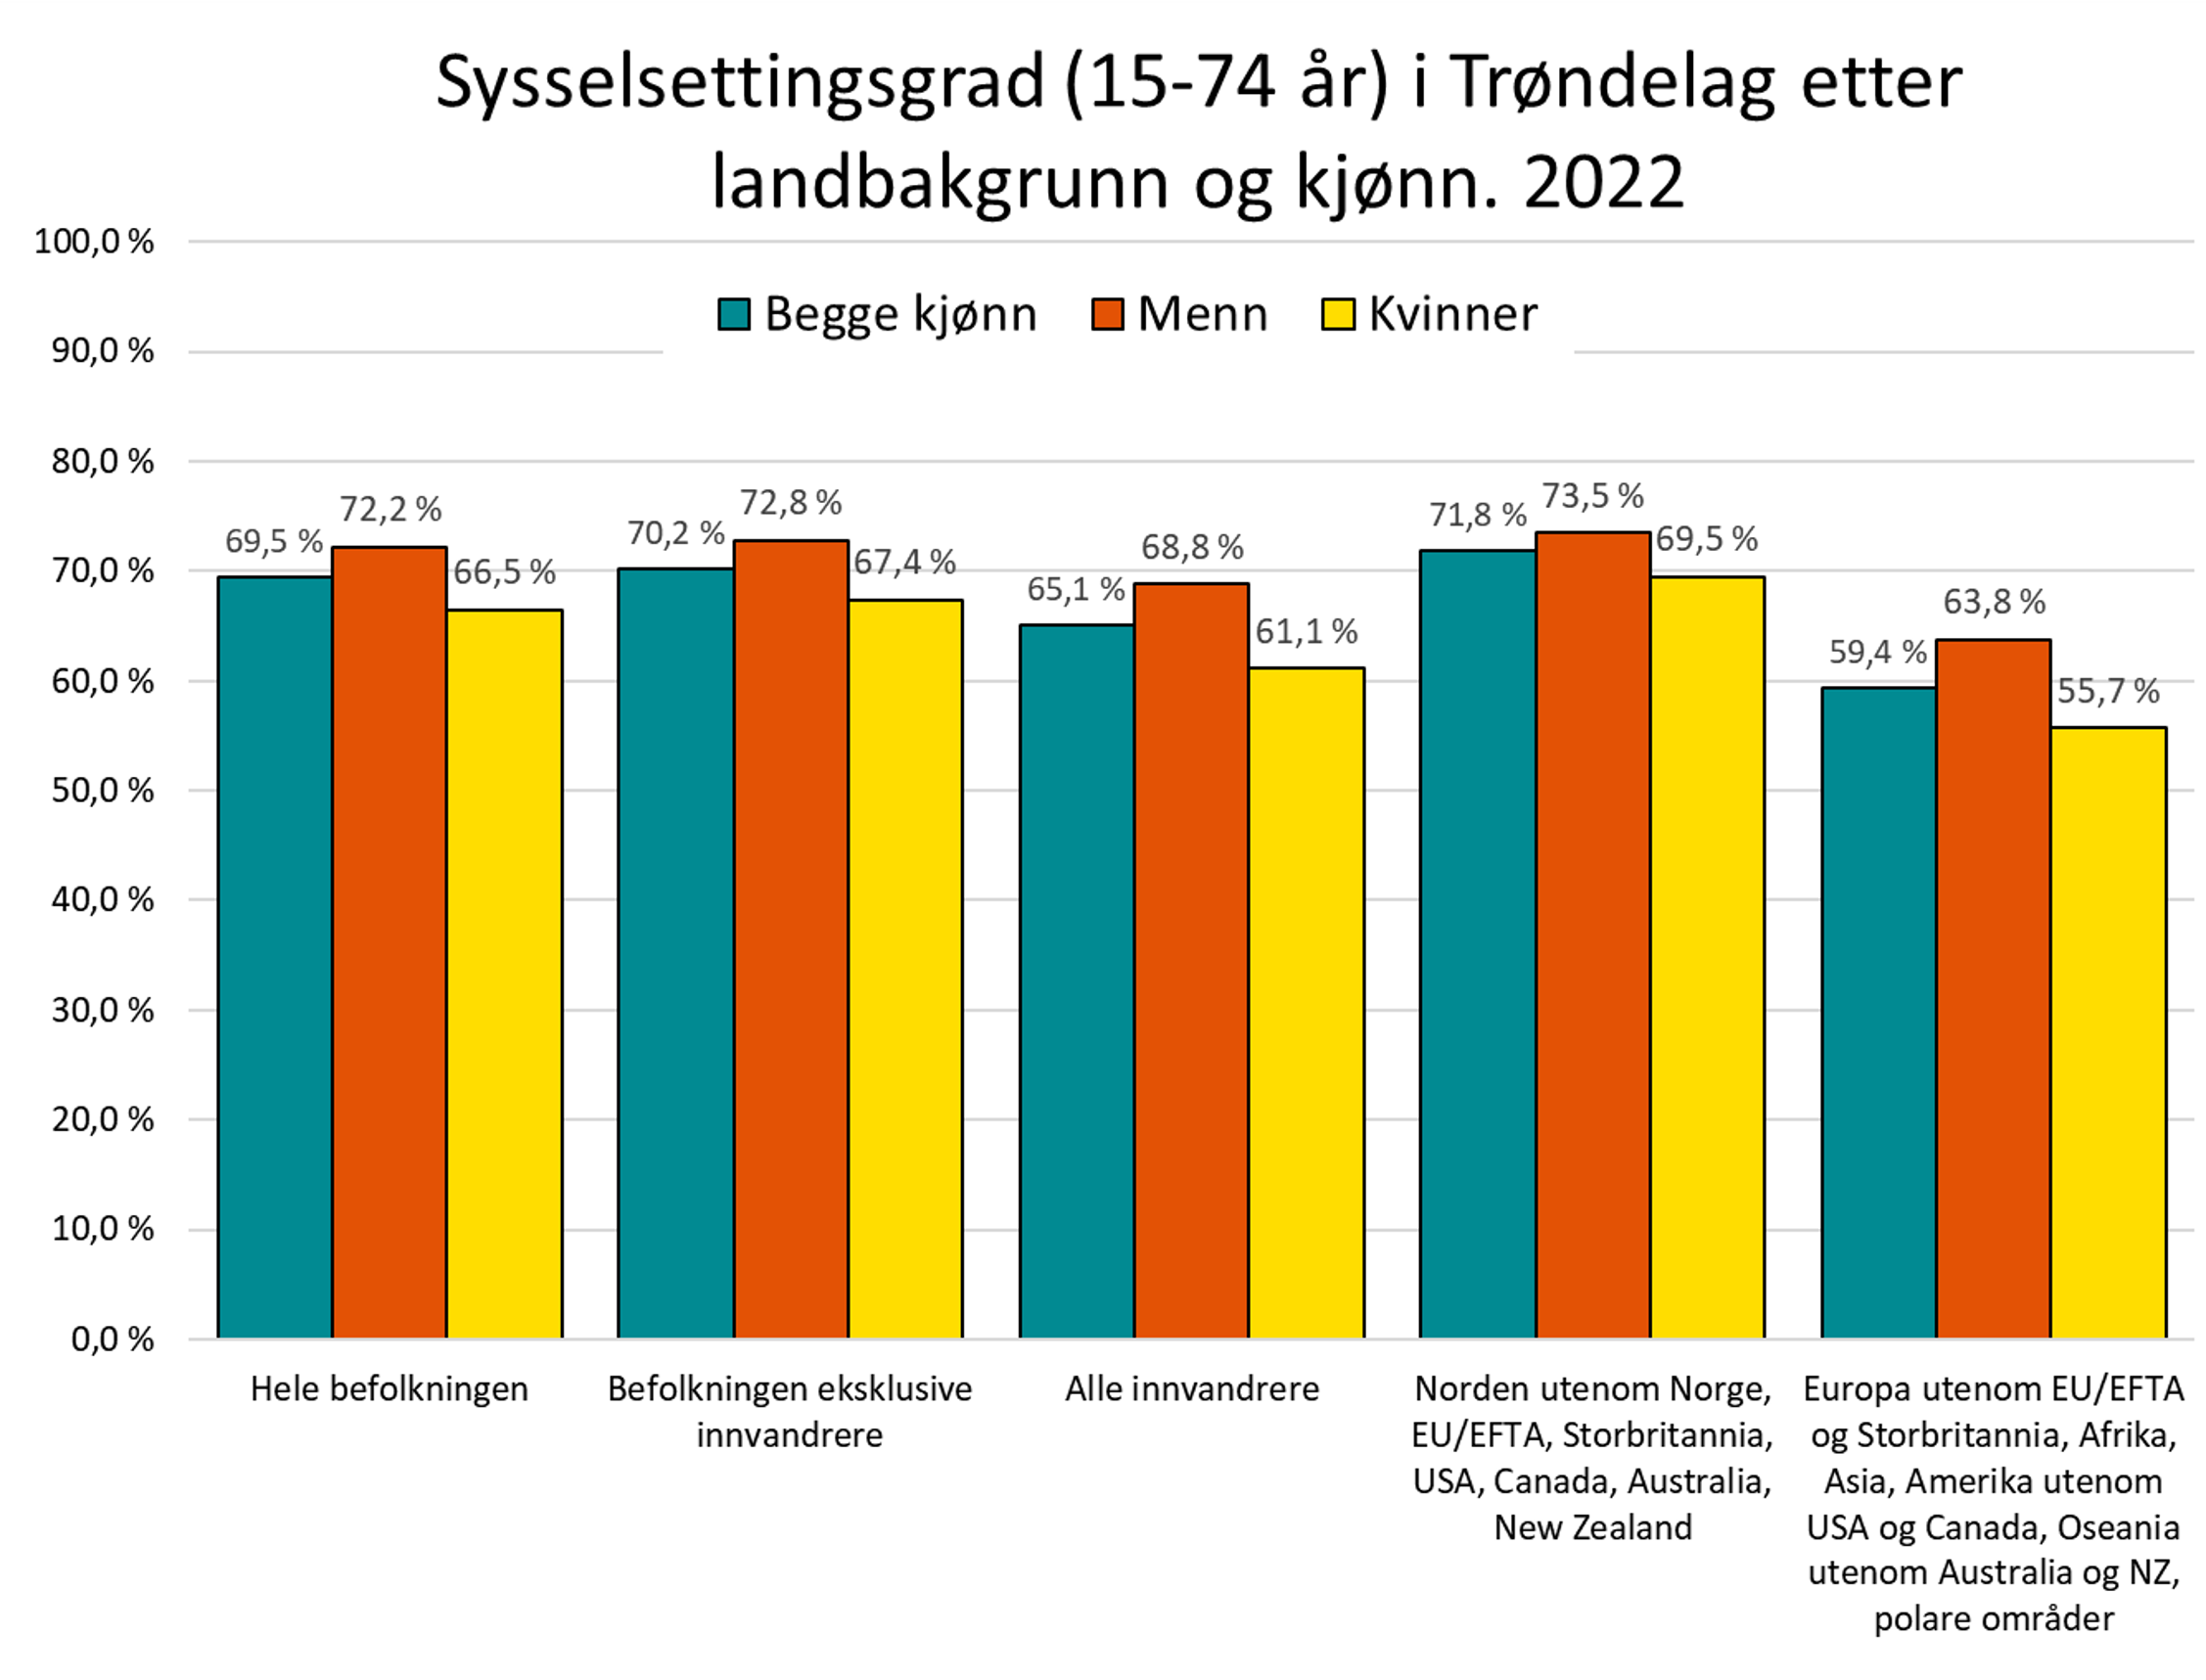 Sysselsettingsgrad (15-74 år) i Trøndelag etter landbakgrunn og kjønn. 2022